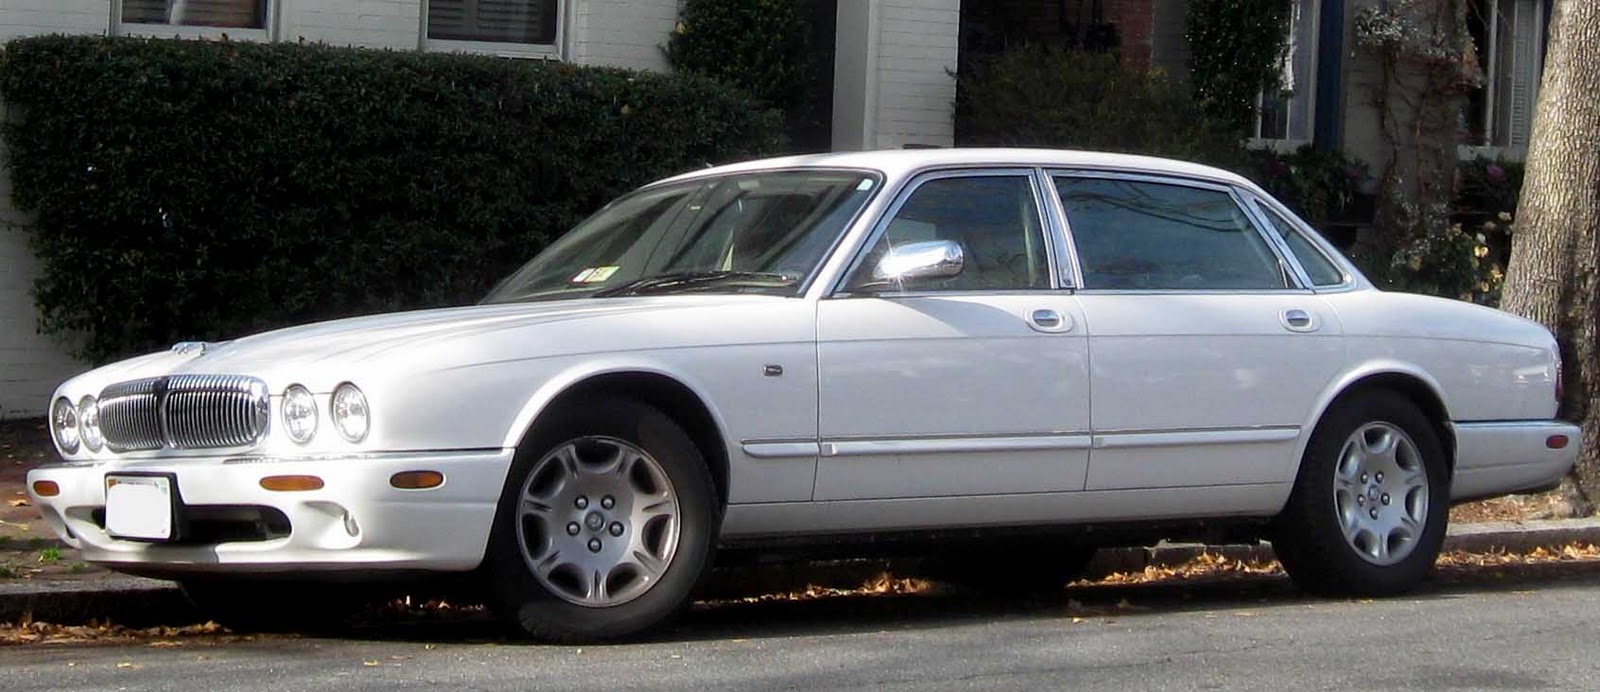 jaguar xj 1997